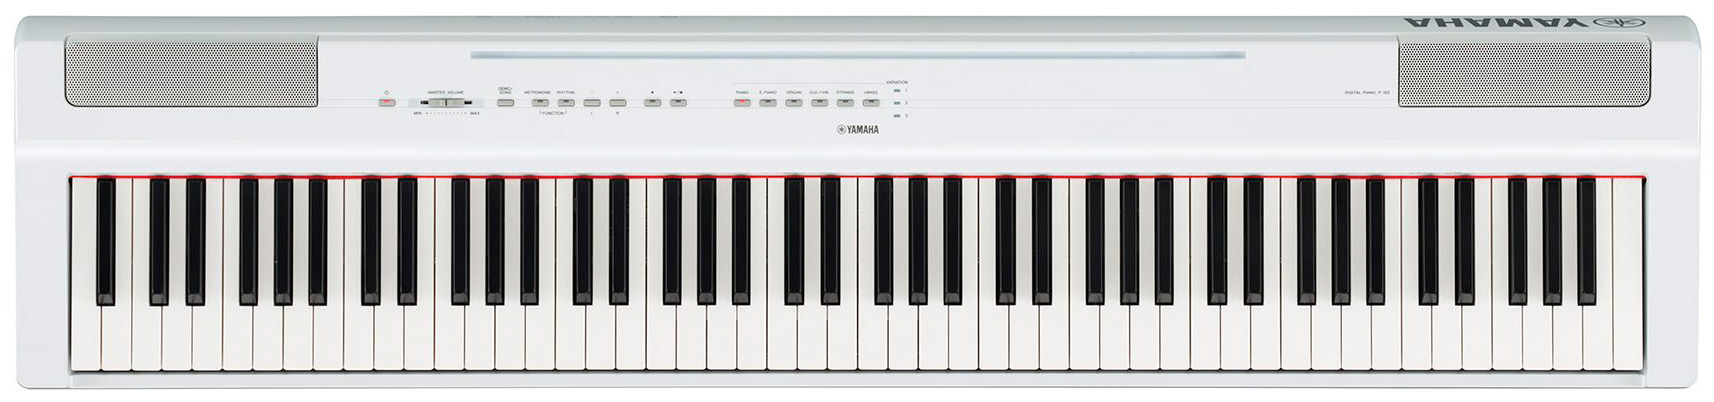 piano digital yamaha p125 review: el mejor piano digital de iniciación